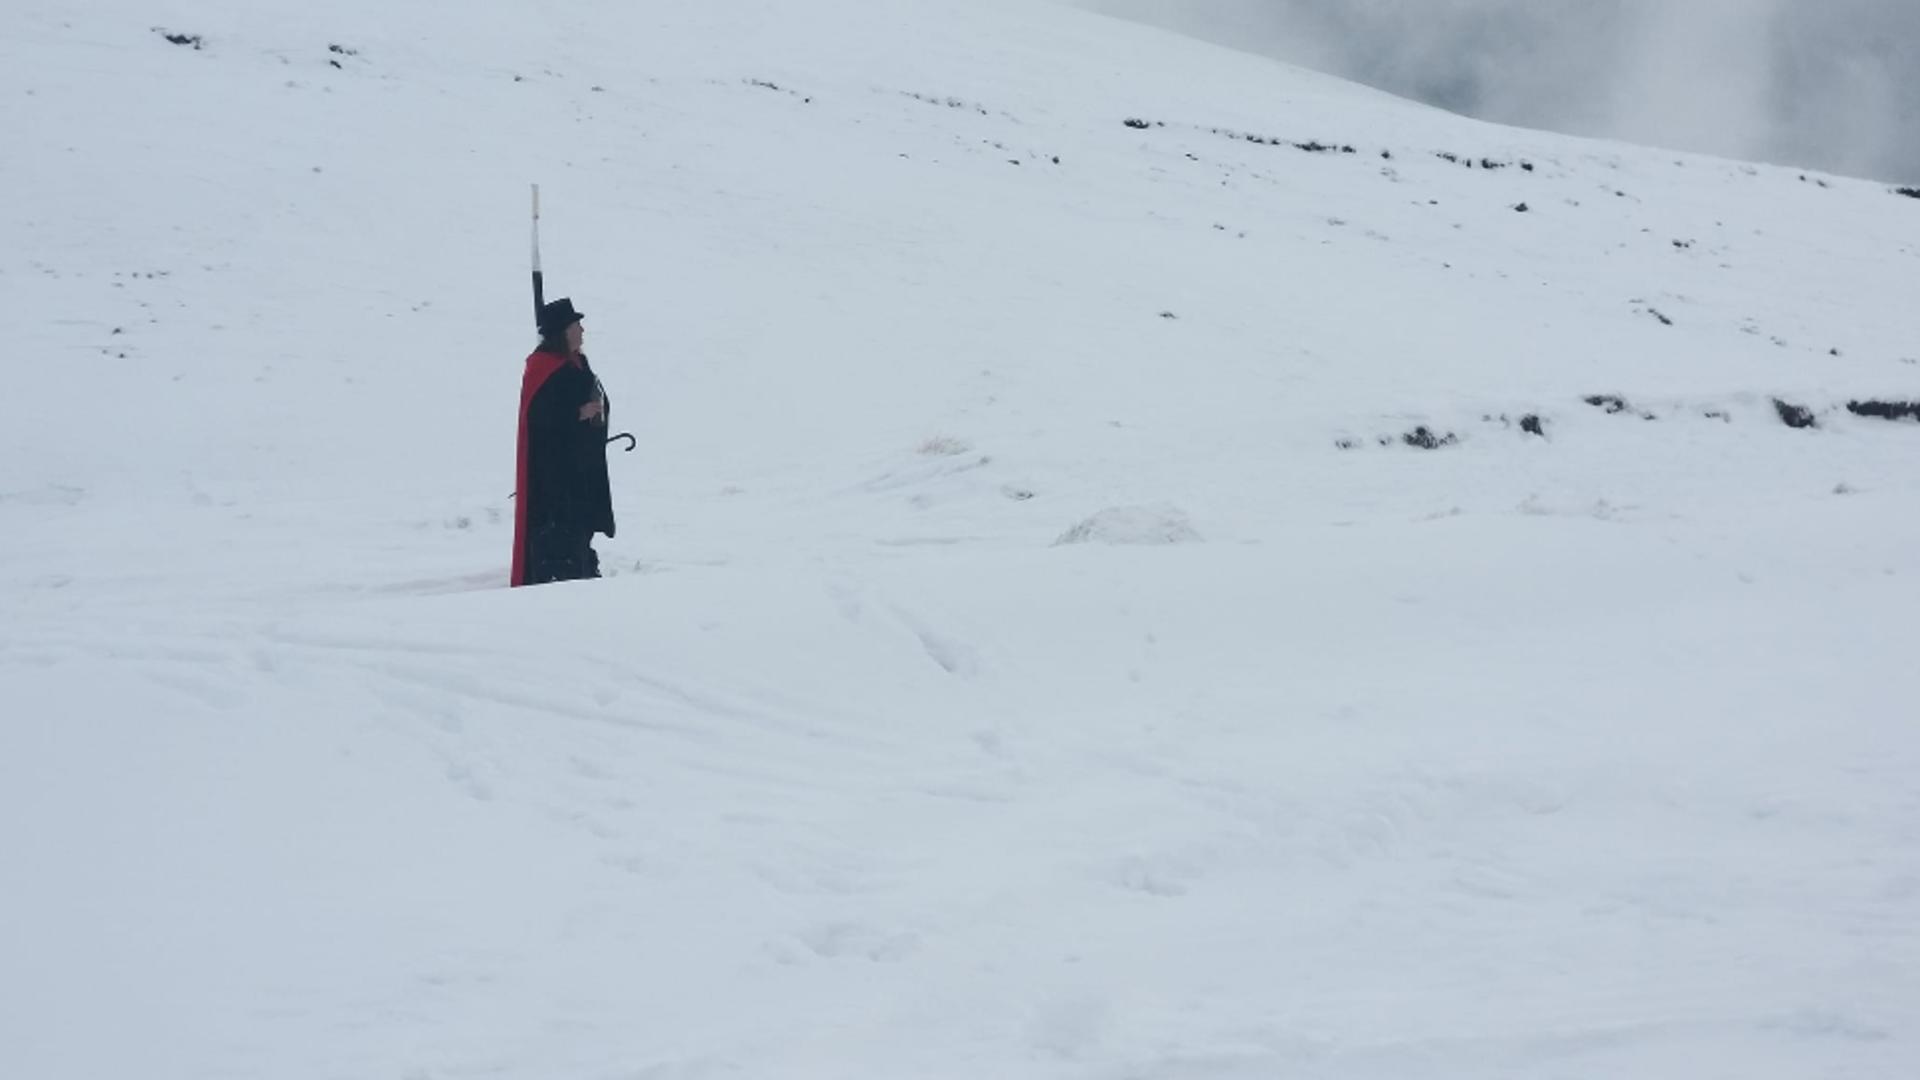 Turist costumat în Dracula, găsit de salvamontiști în zăpadă. Bărbatul s-a rătăcit pe munte